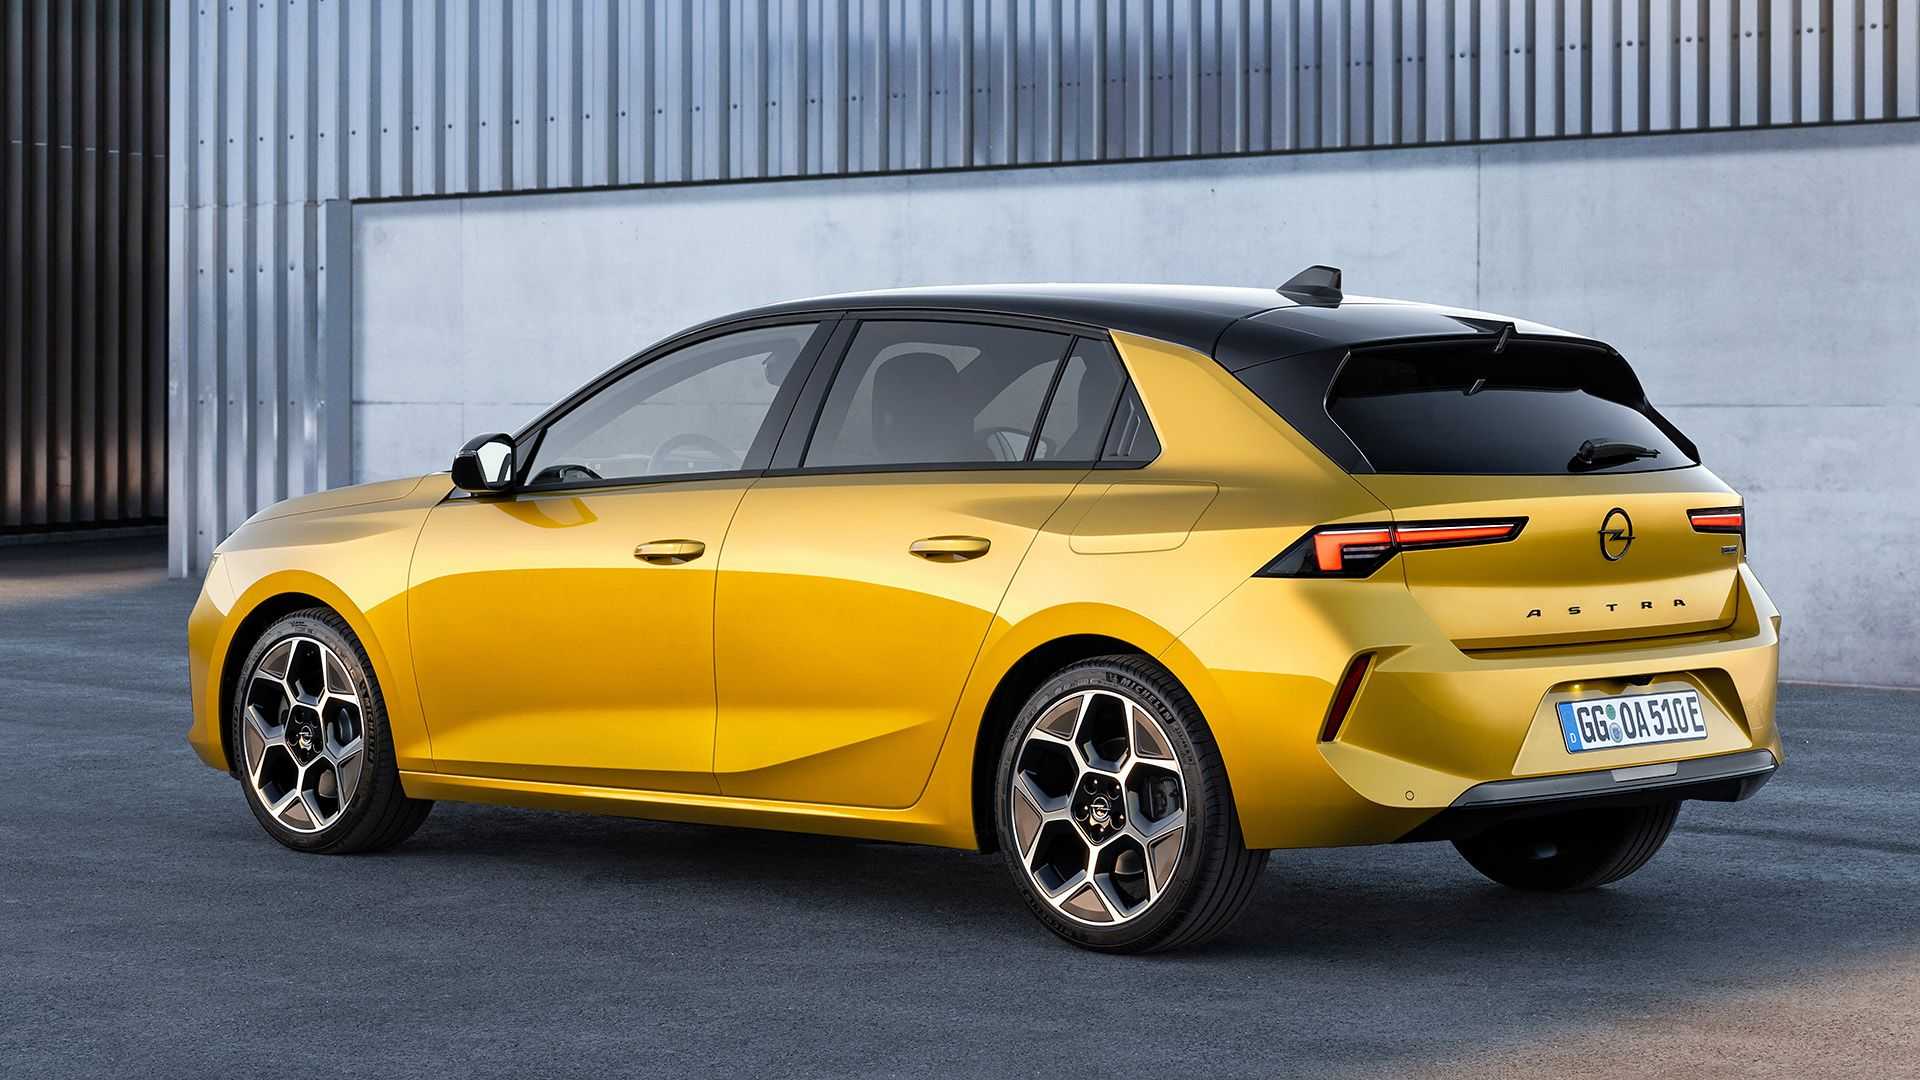 Πρεμιέρα για το νέo Opel Astra